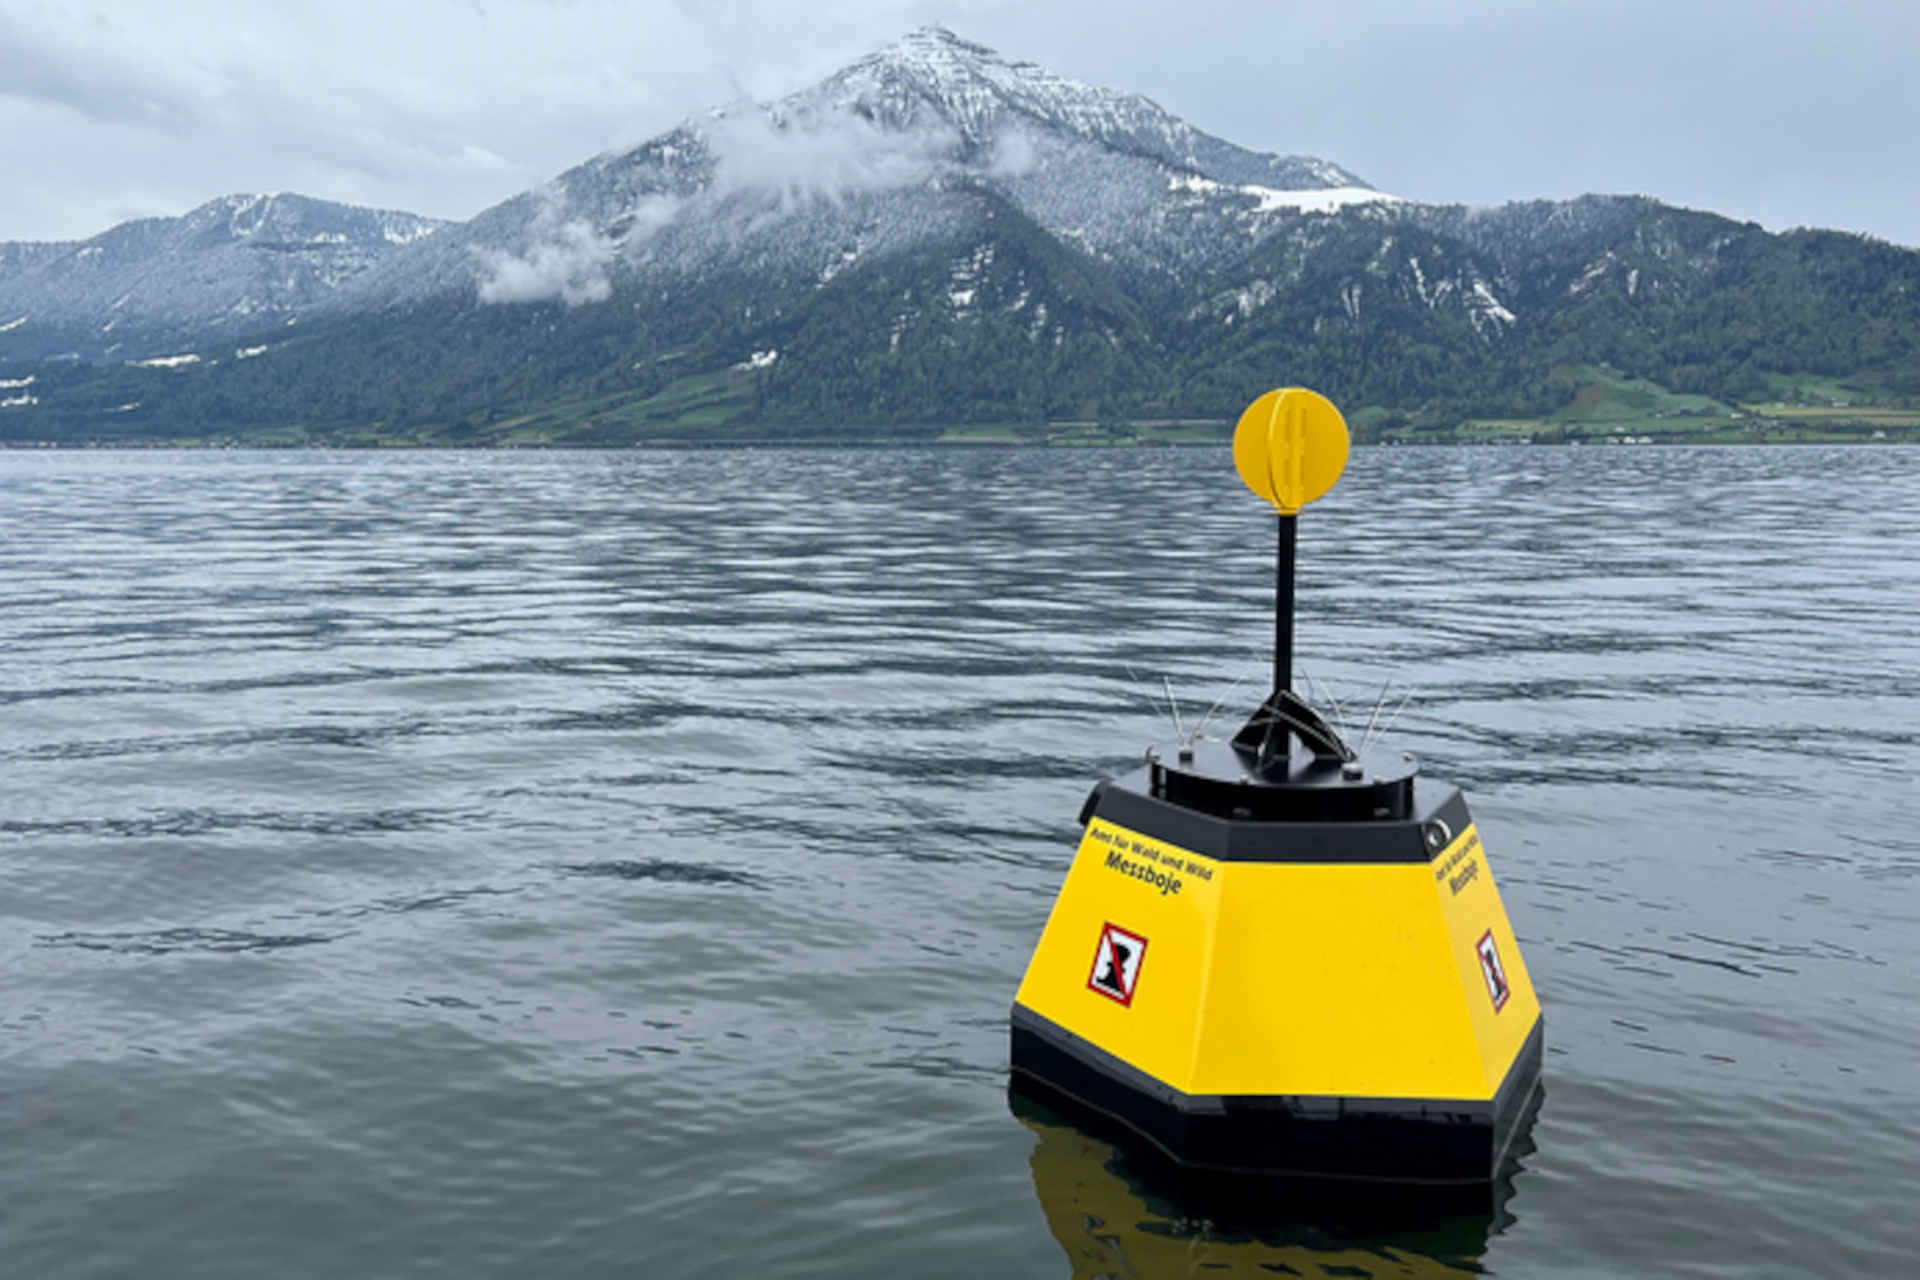 Una fotocamera subacquea per monitorare la qualità dell'acqua